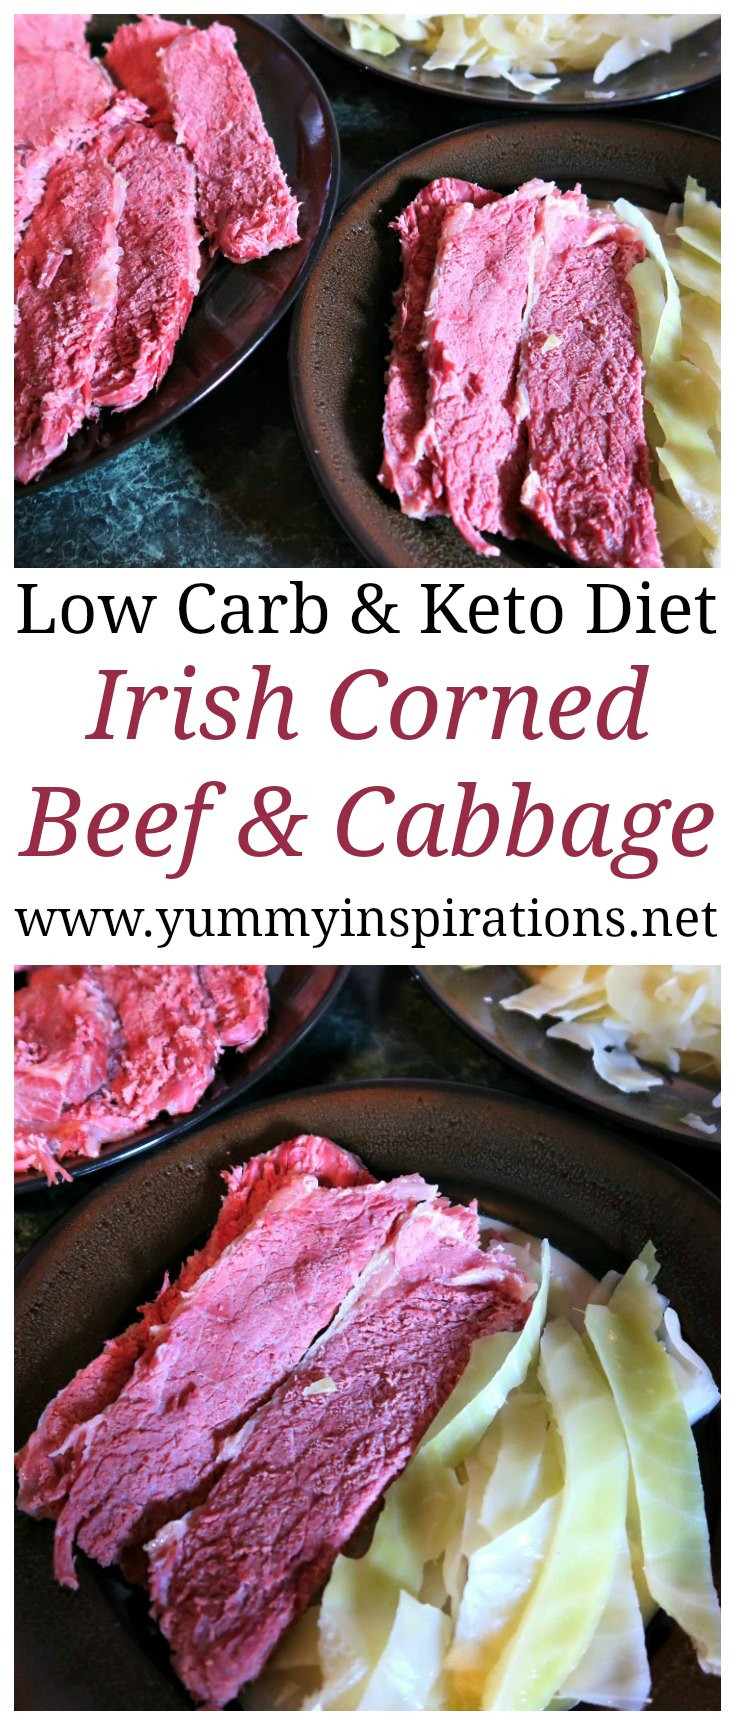 Irish Corned Beef And Cabbage
 Authentic Irish Corned Beef and Cabbage Recipe Easy Keto